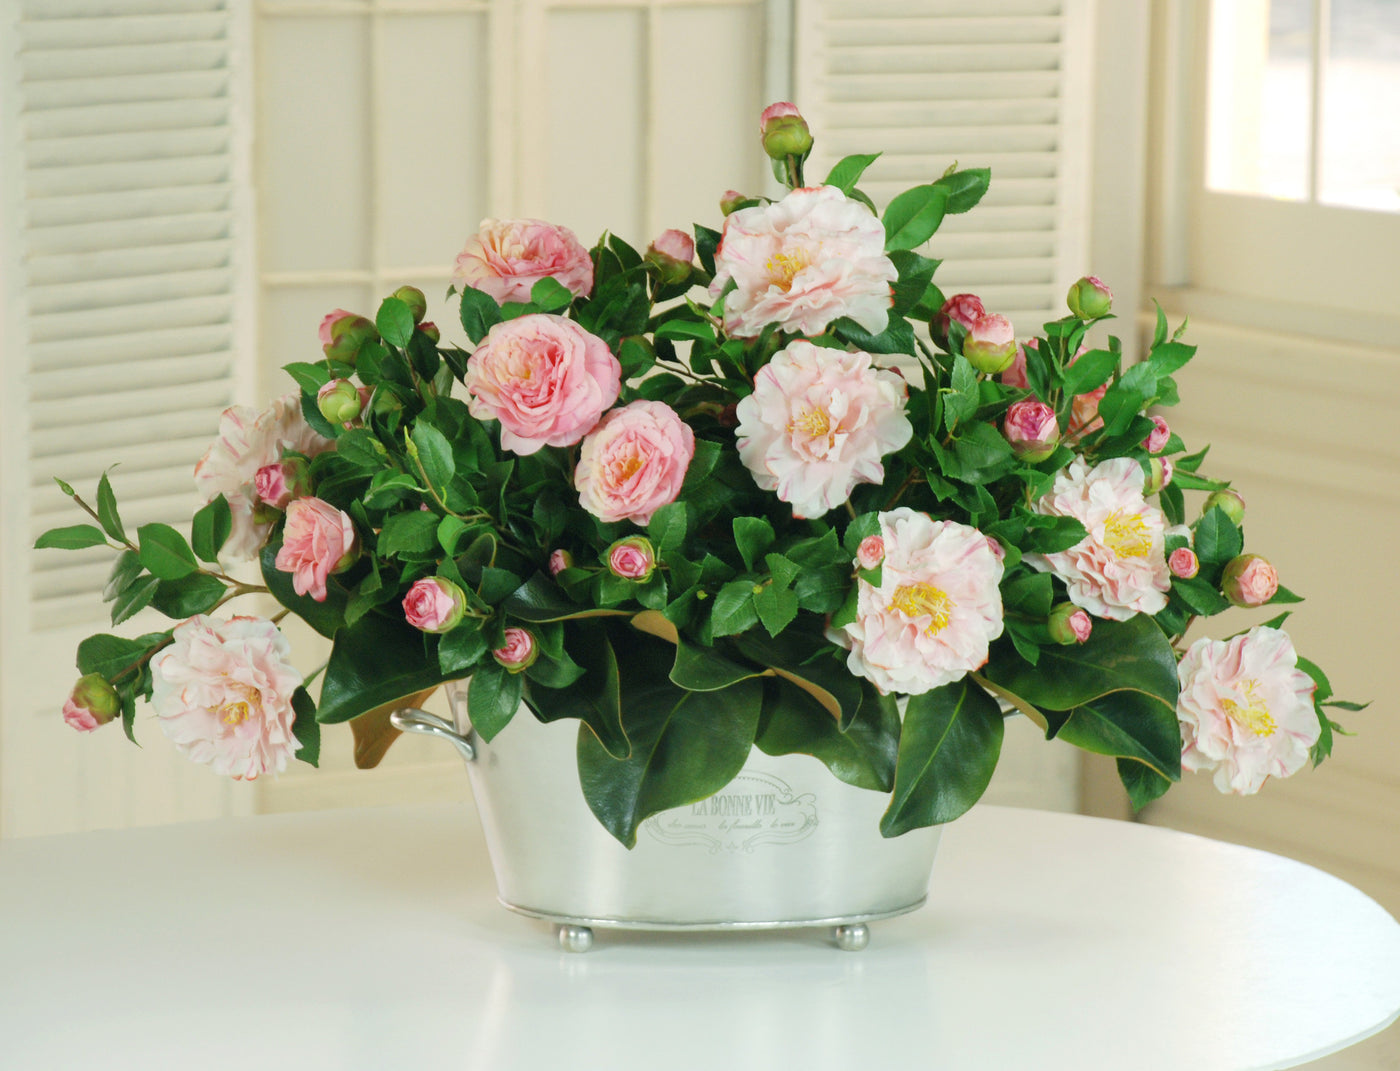 GARDEN CAMELLIA CENTERPIECE (DP556-PK) - Winward Home silk flower arrangements